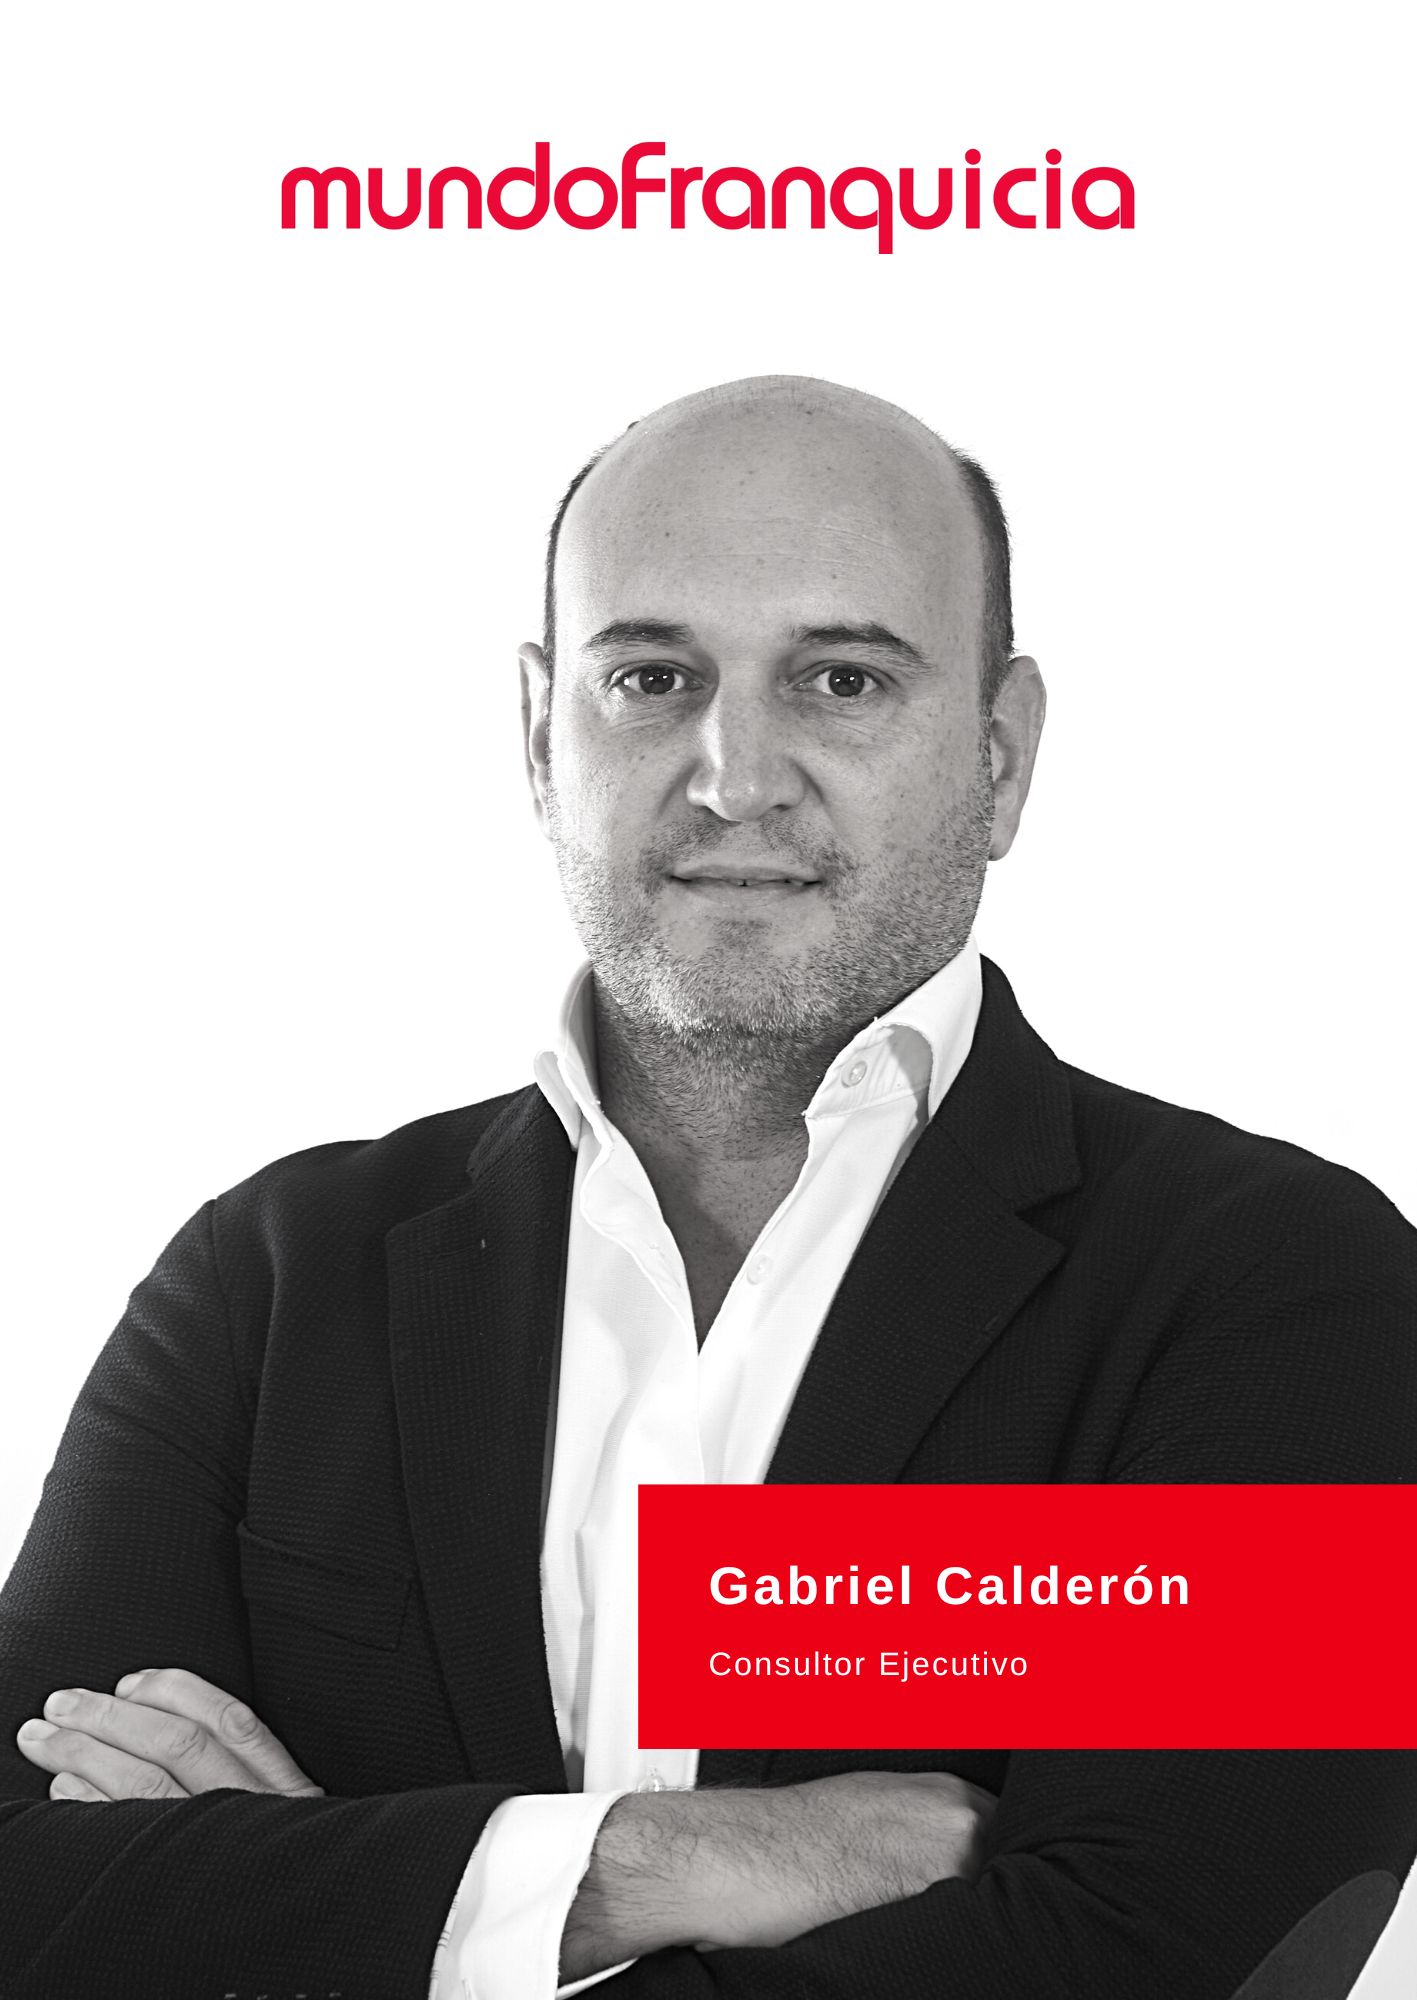 Gabriel Calderón Naval